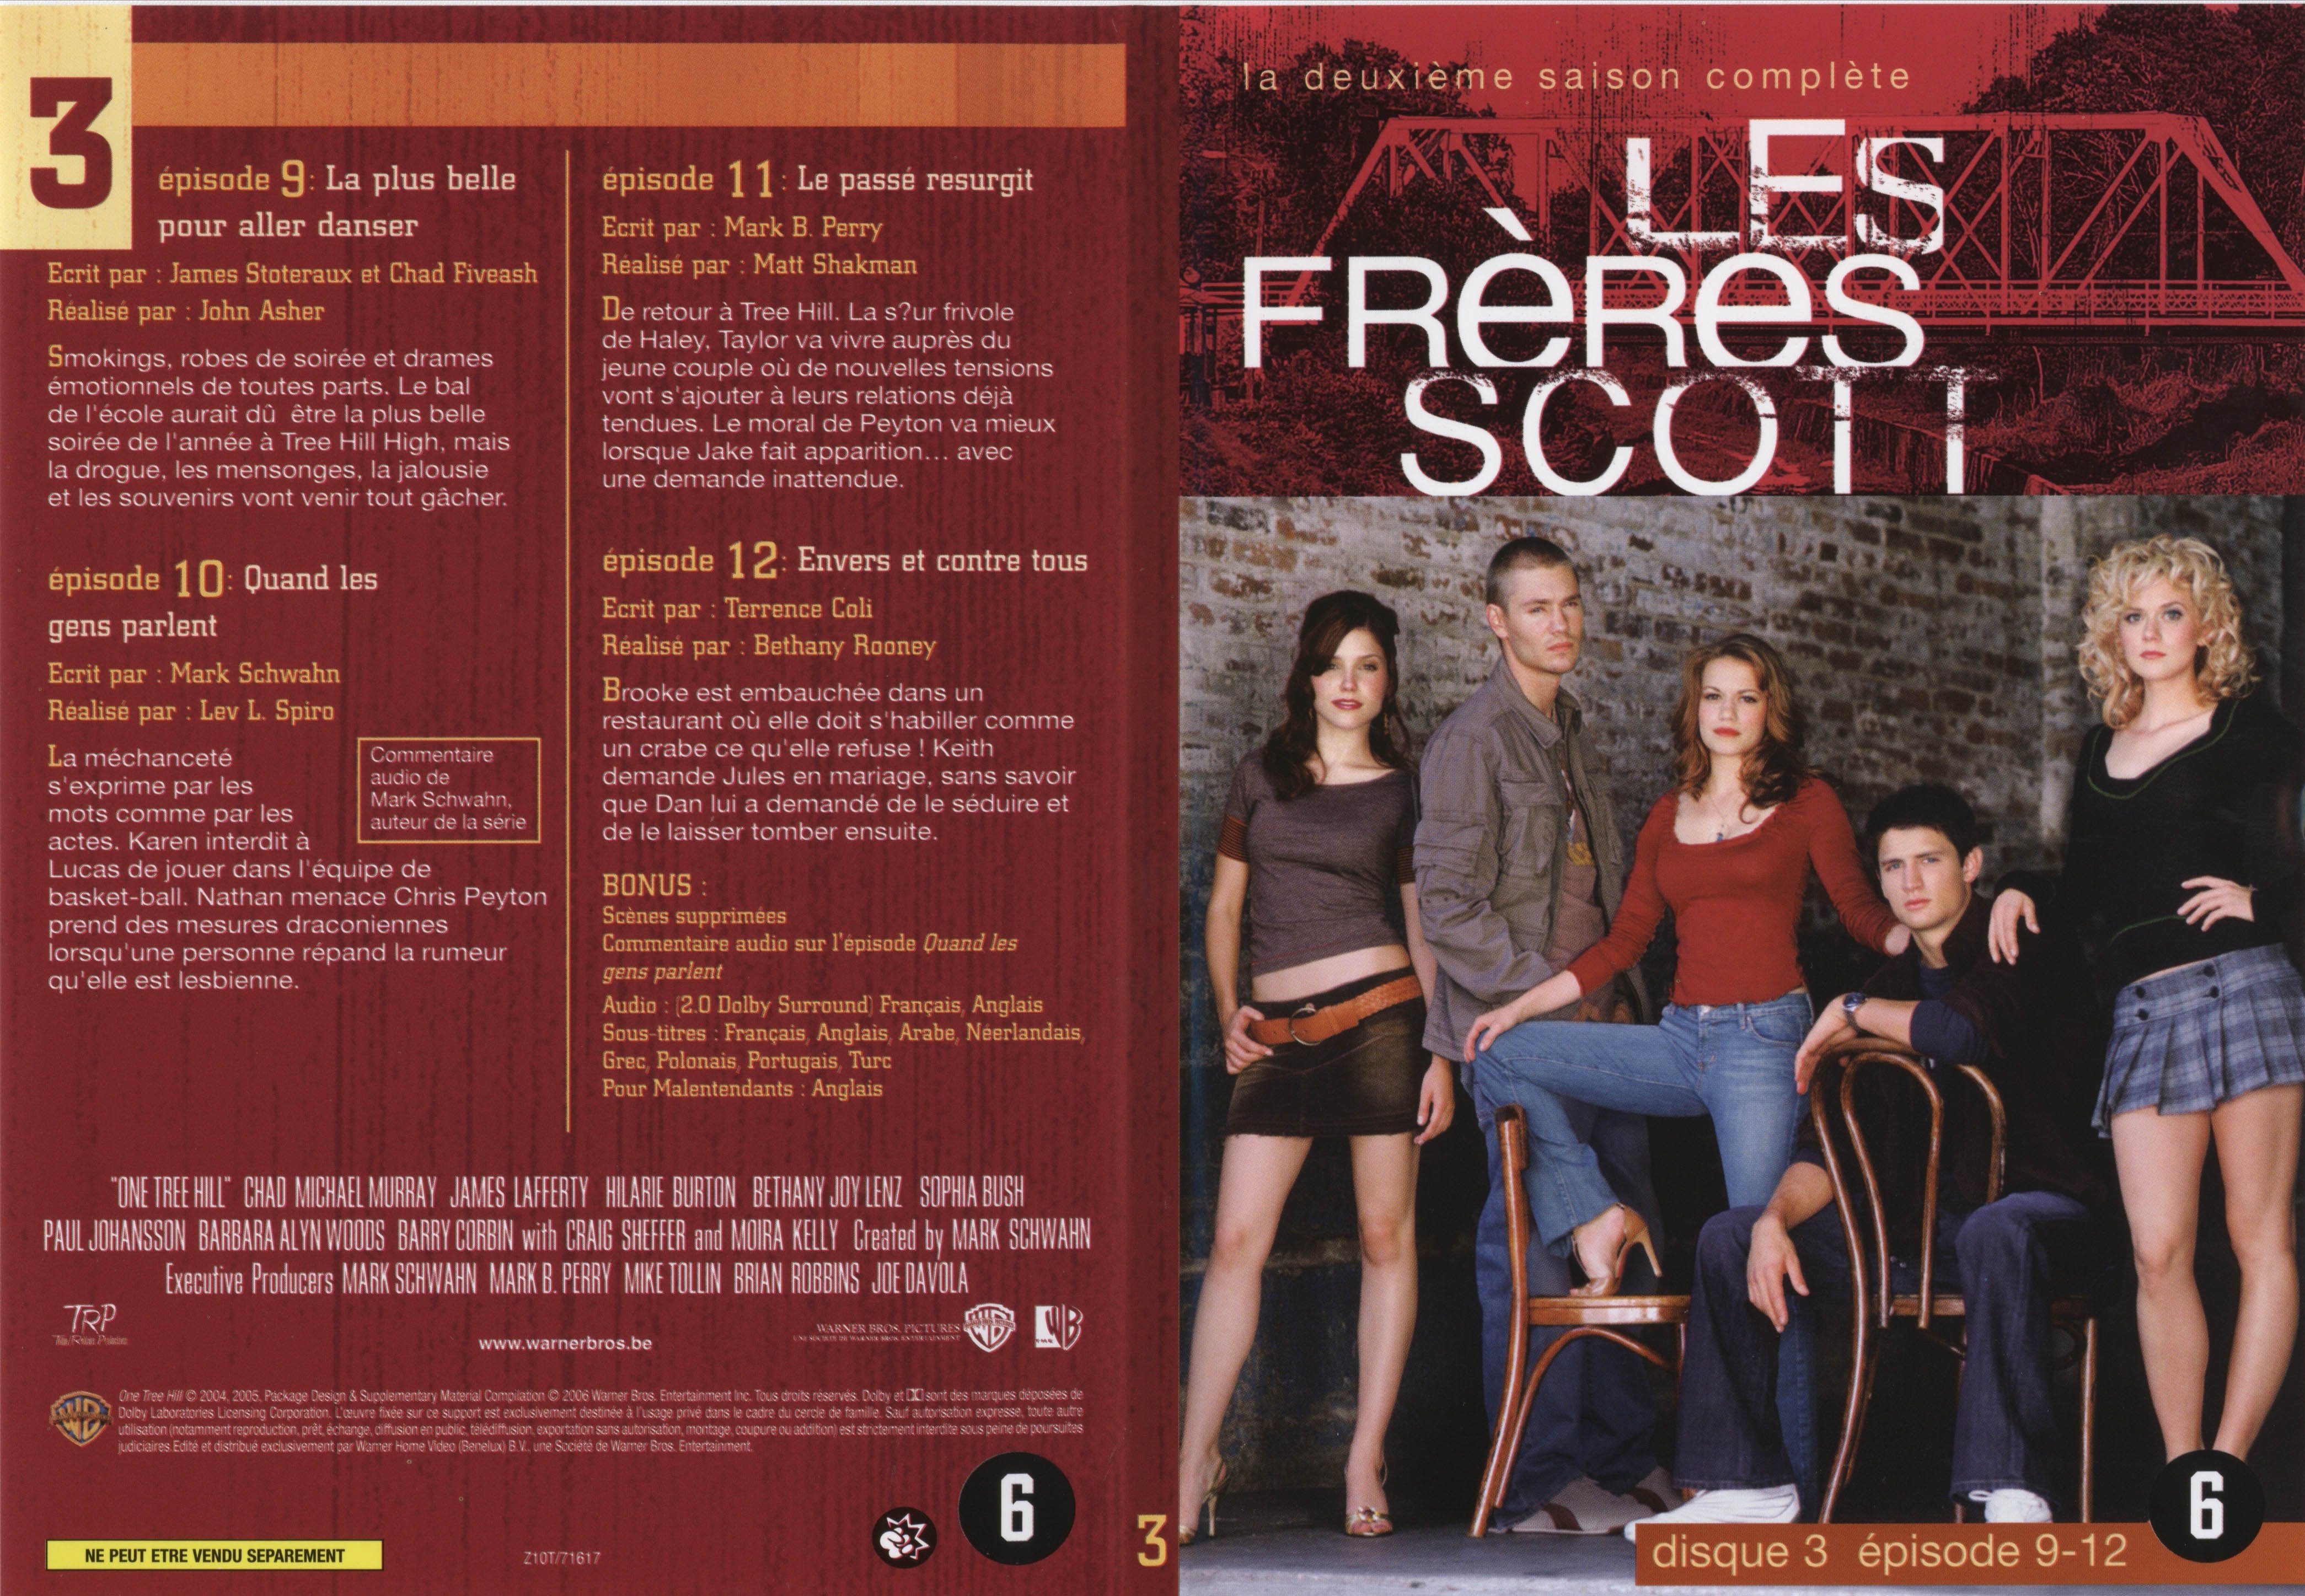 Jaquette DVD Les frres Scott Saison 2 dvd 3